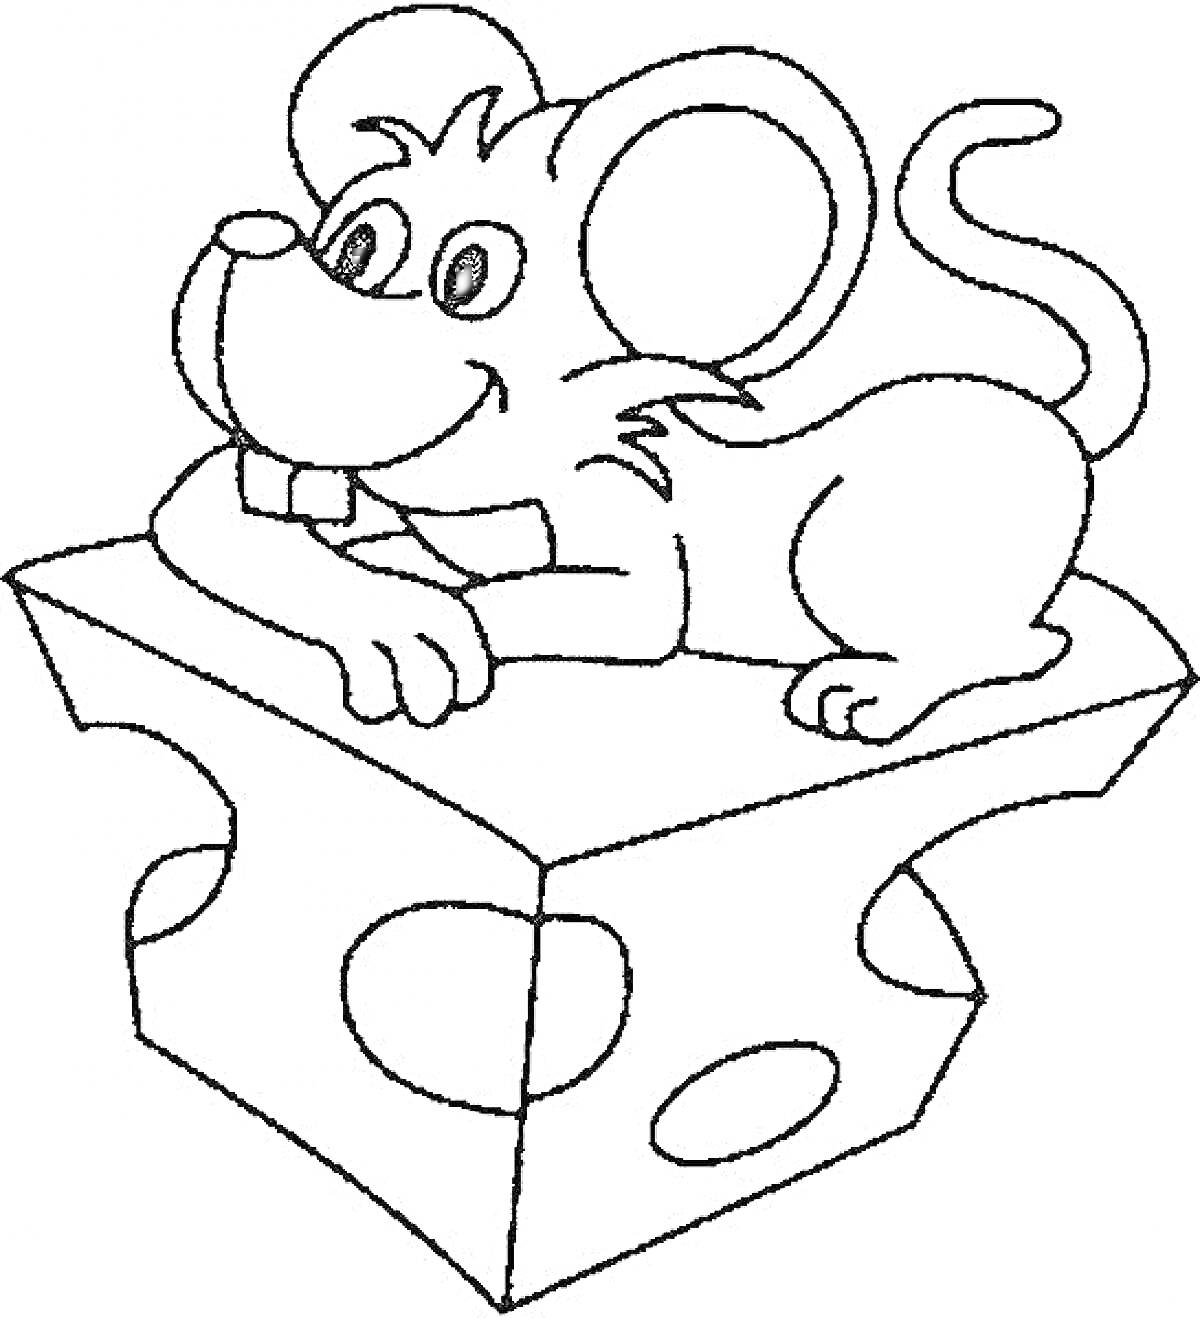 Мышонок лежит на куске сыра